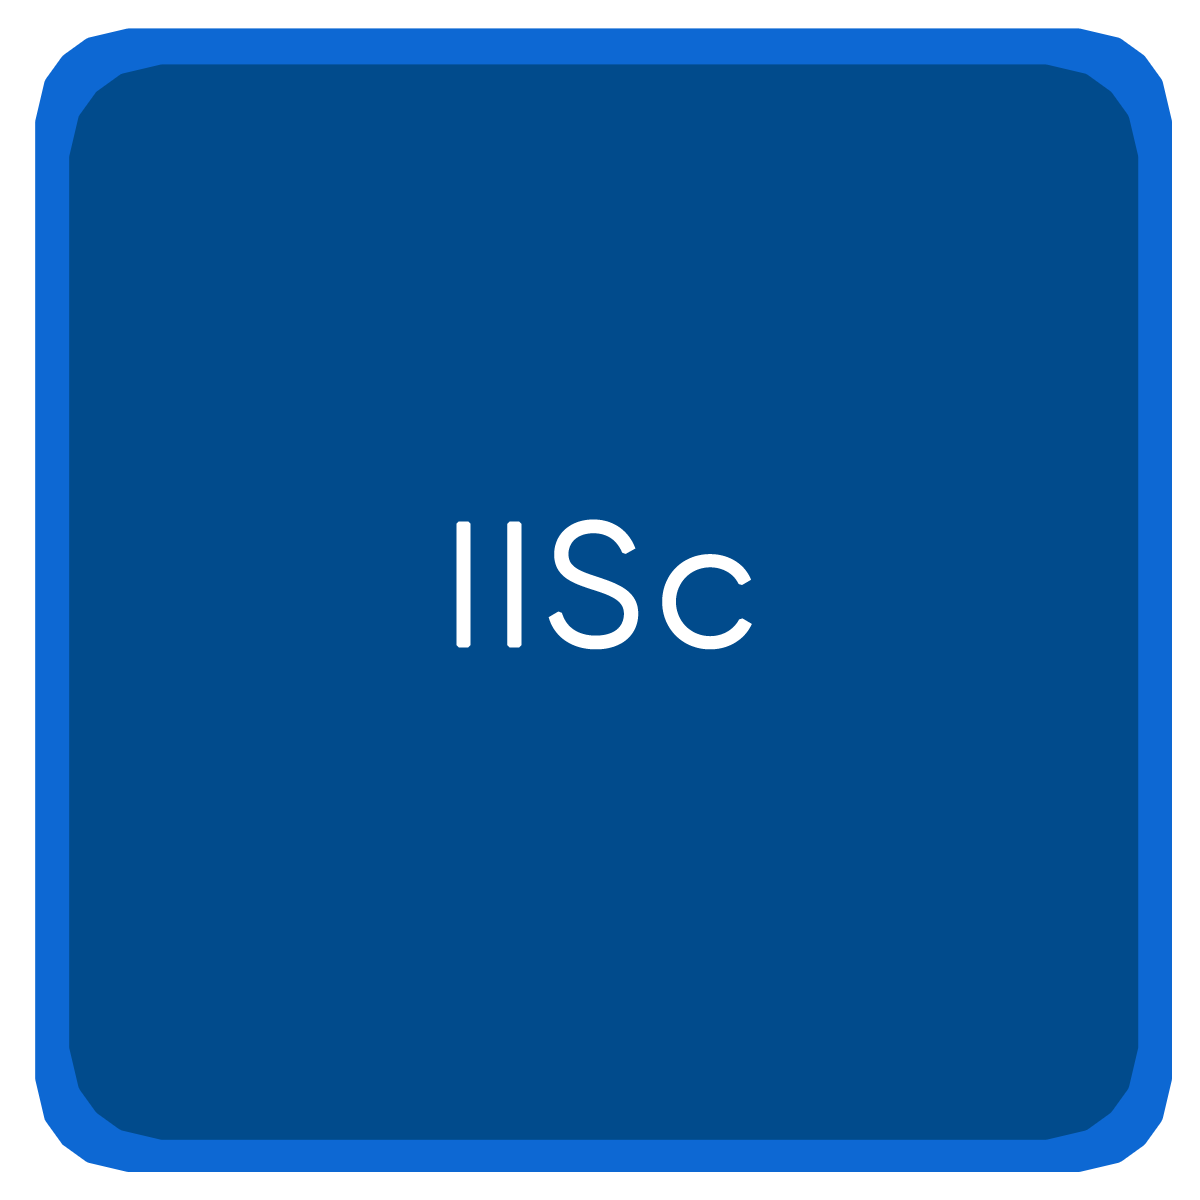 IISc